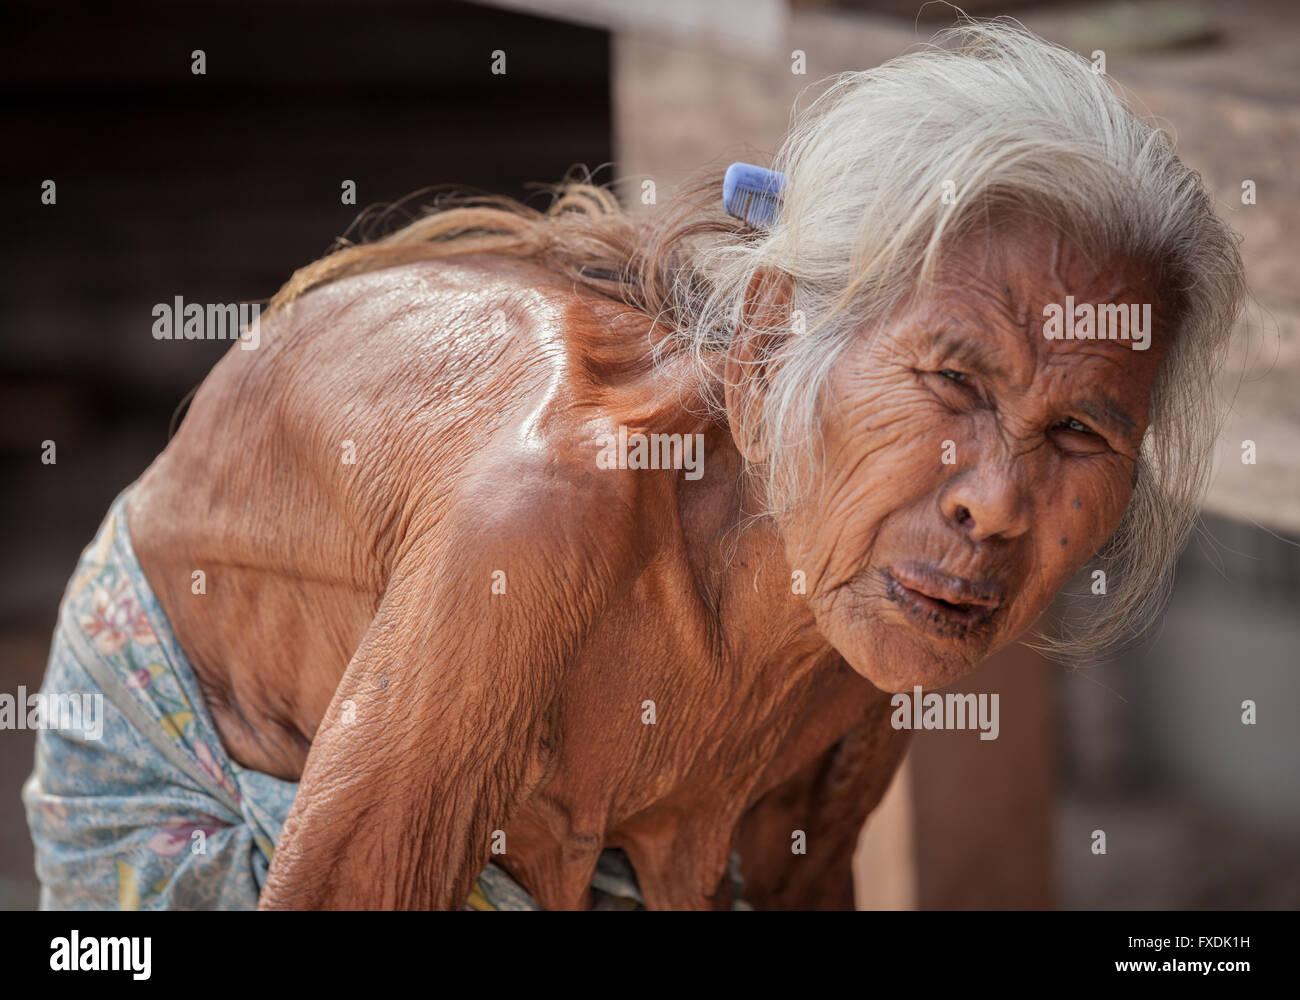 La Birmanie, Myanmar, une vieille femme, tannées Peau parcheminé, cheveux blancs. Banque D'Images